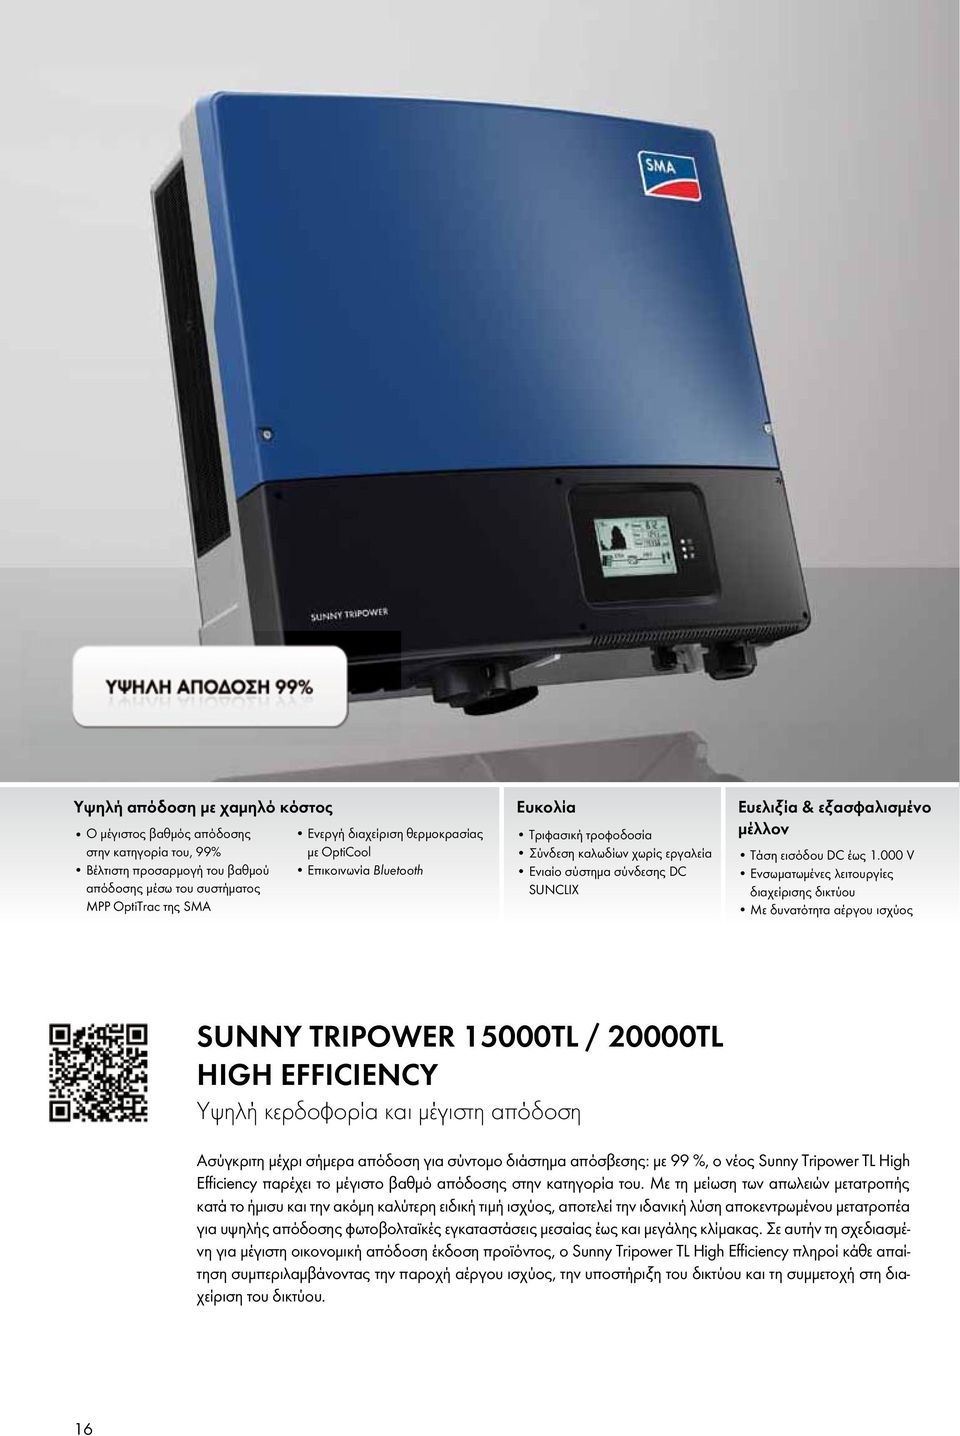 000 V Ενσωματωμένες λειτουργίες διαχείρισης δικτύου Με δυνατότητα αέργου ισχύος Sunny TripowEr 15000TL / 20000TL HigH EfficiEncy Υψηλή κερδοφορία και μέγιστη απόδοση Ασύγκριτη μέχρι σήμερα απόδοση